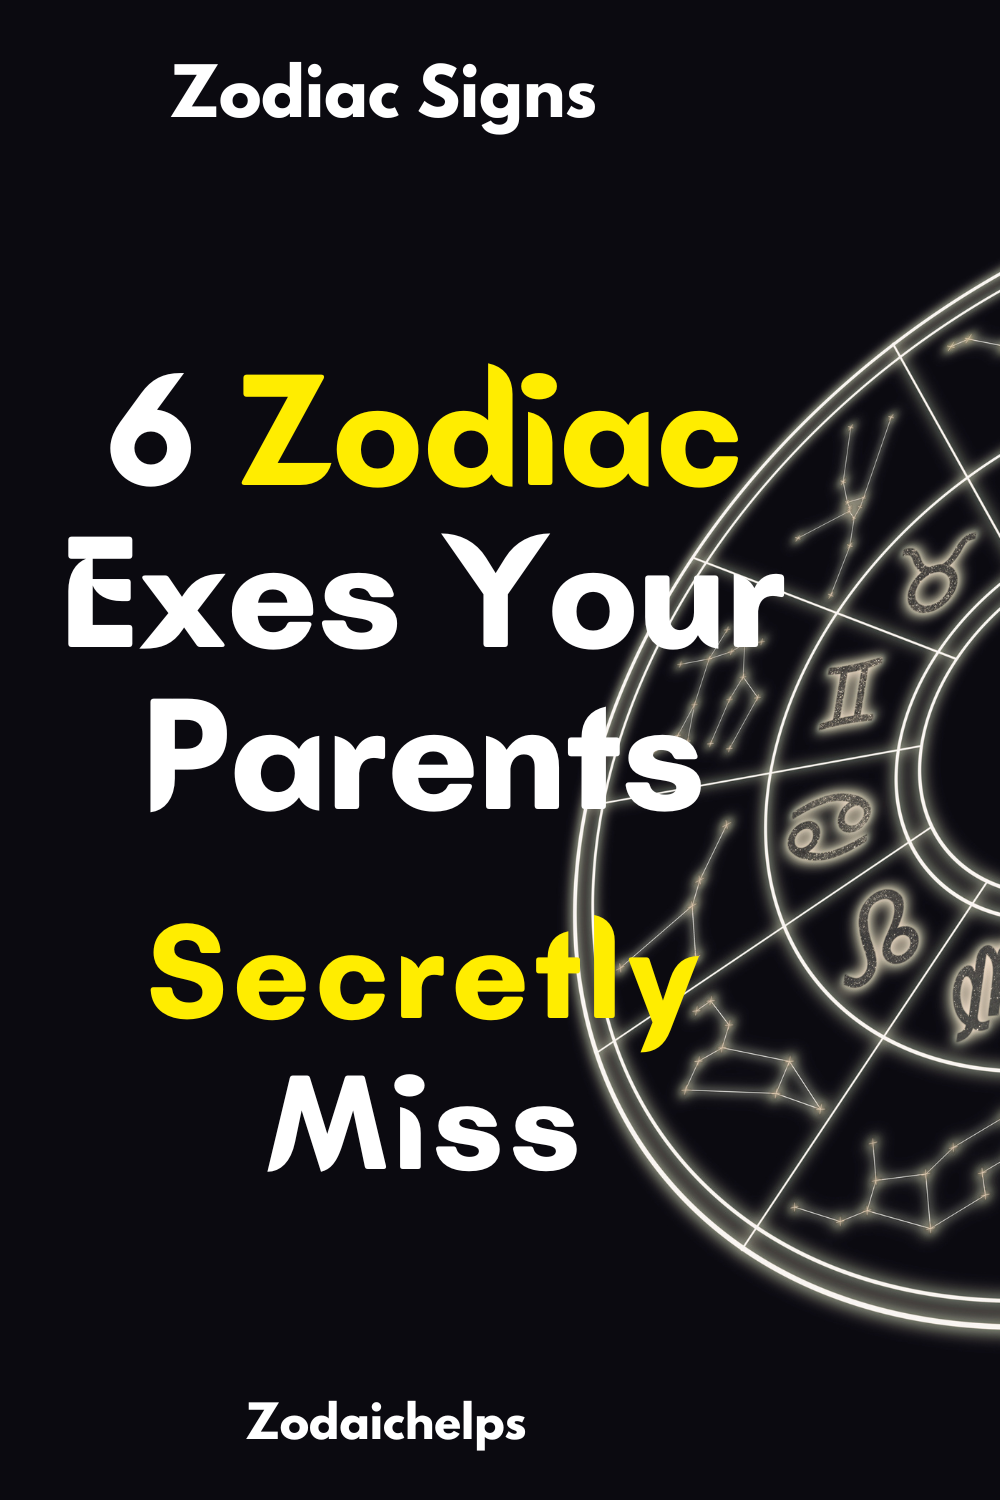 6 Zodiac Exes Your Parents Secretly Miss